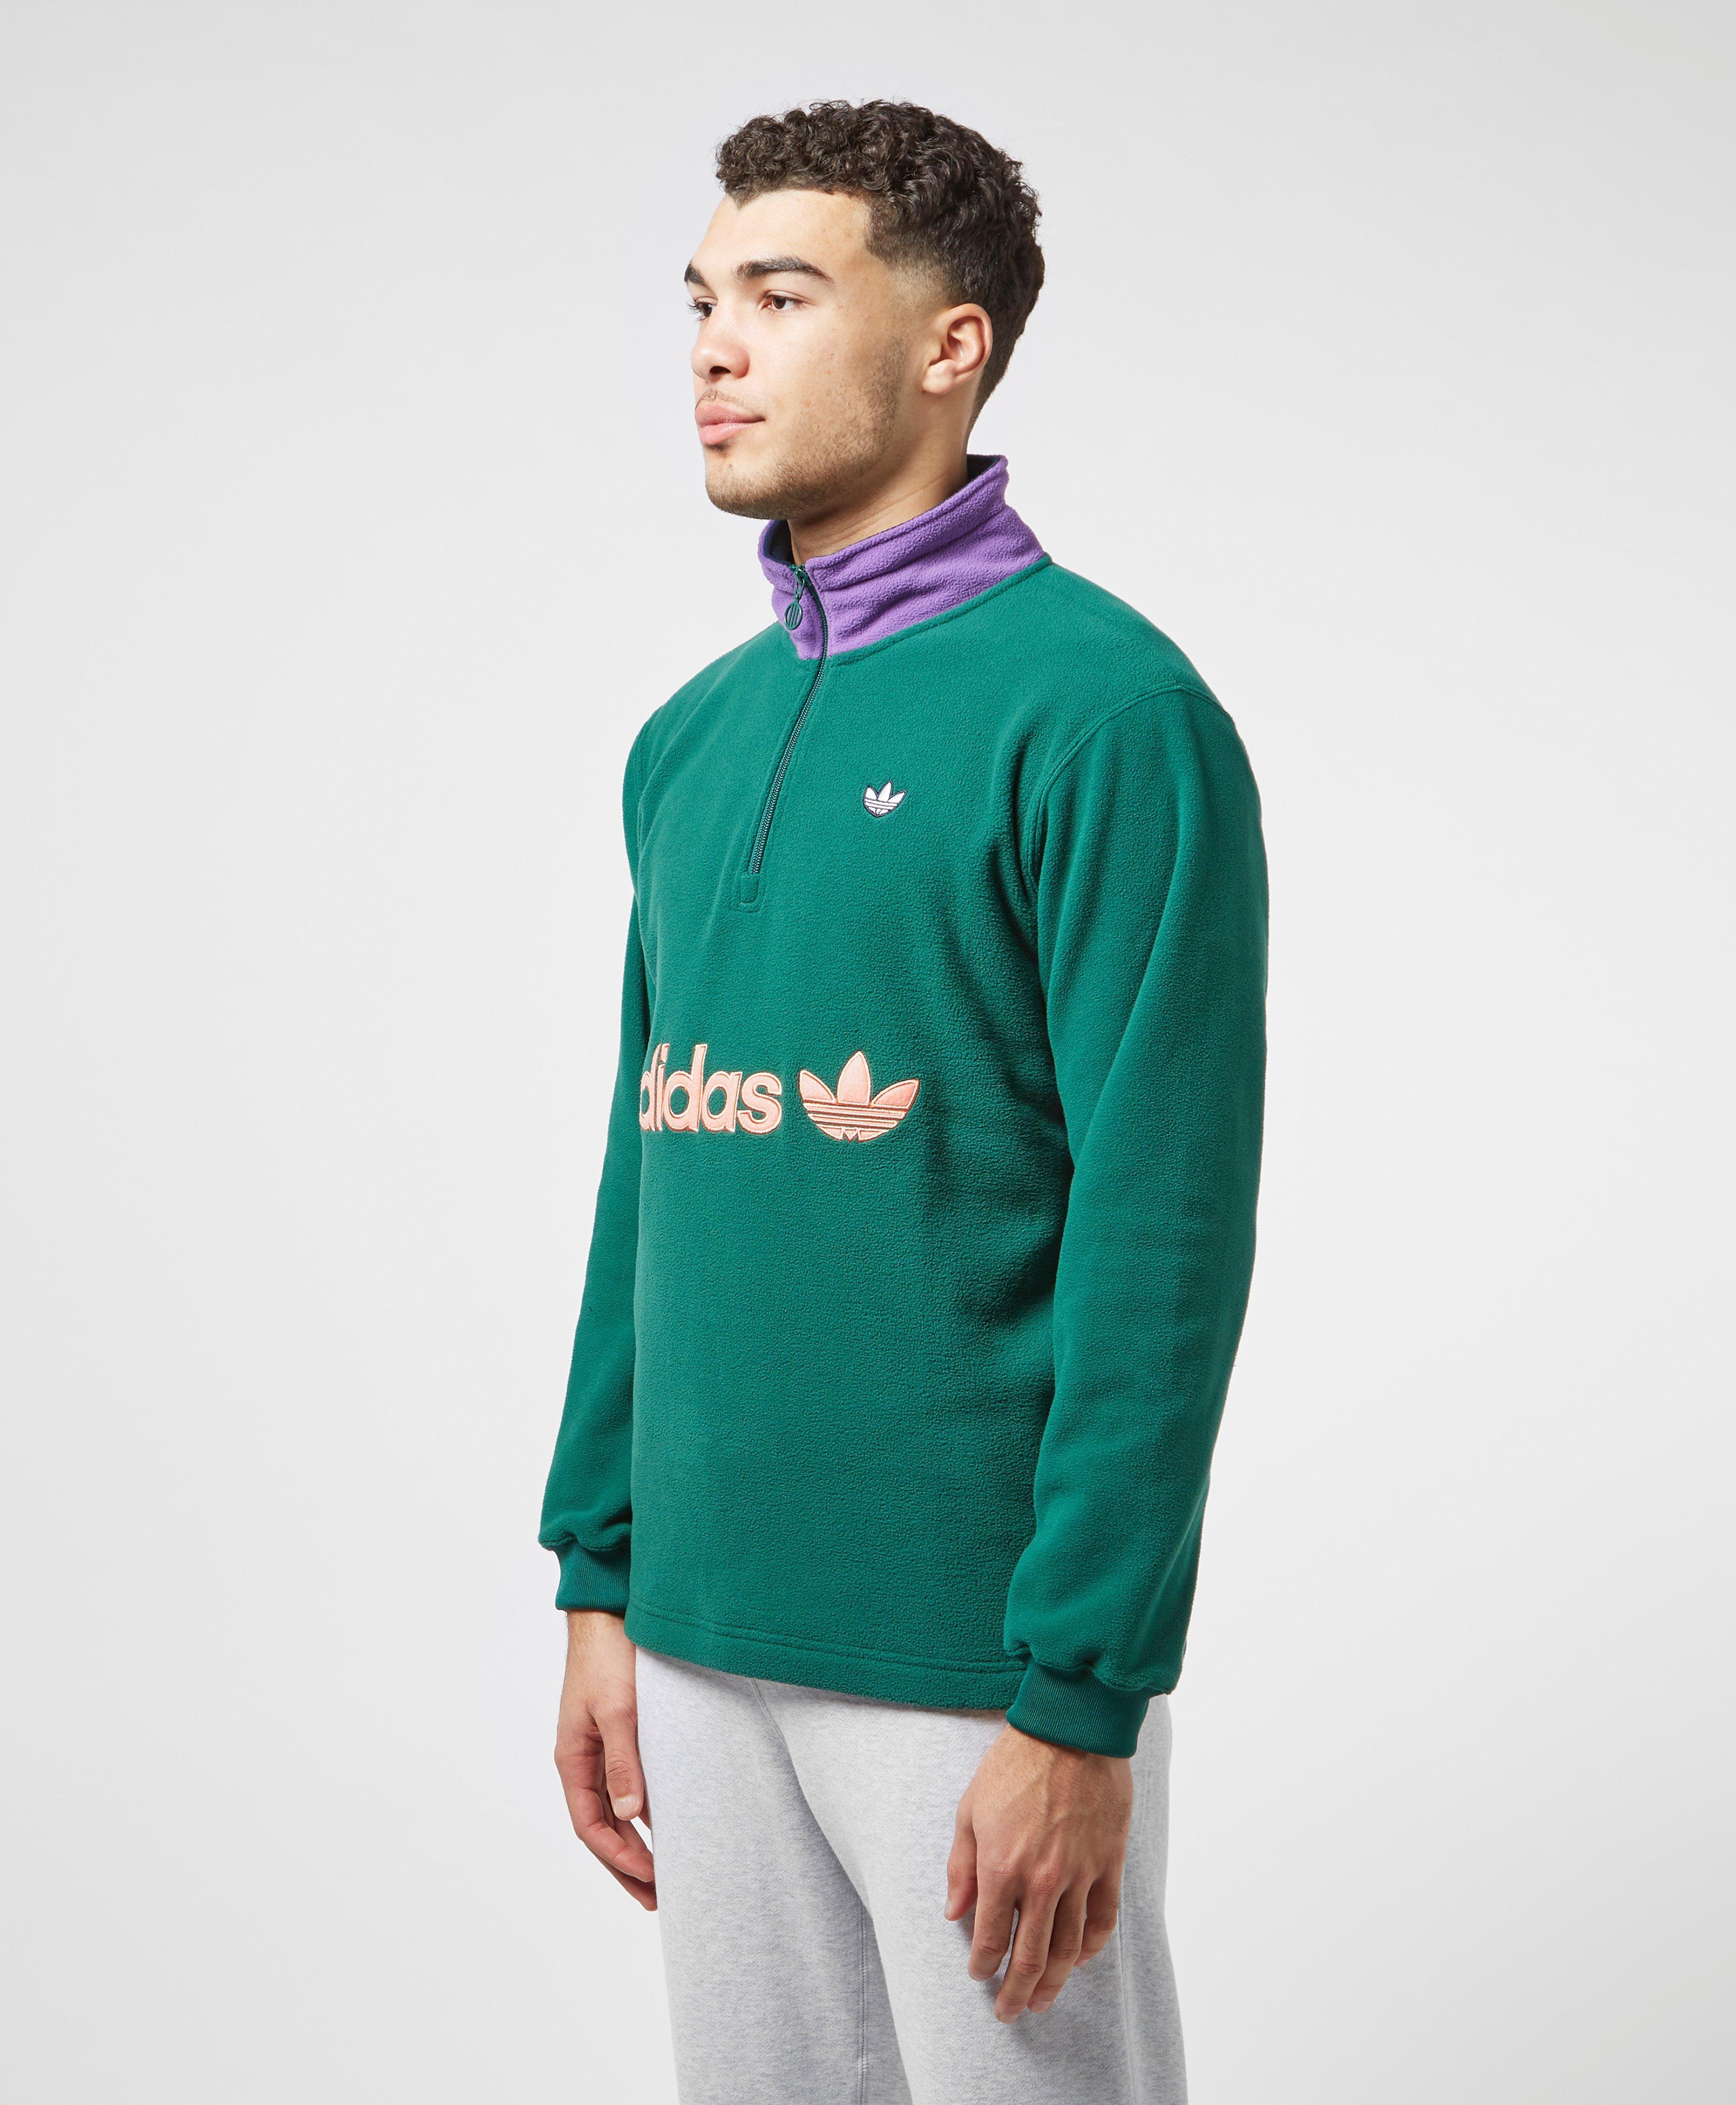 adidas Originals Half Zip Fleece in Green for Men - Lyst